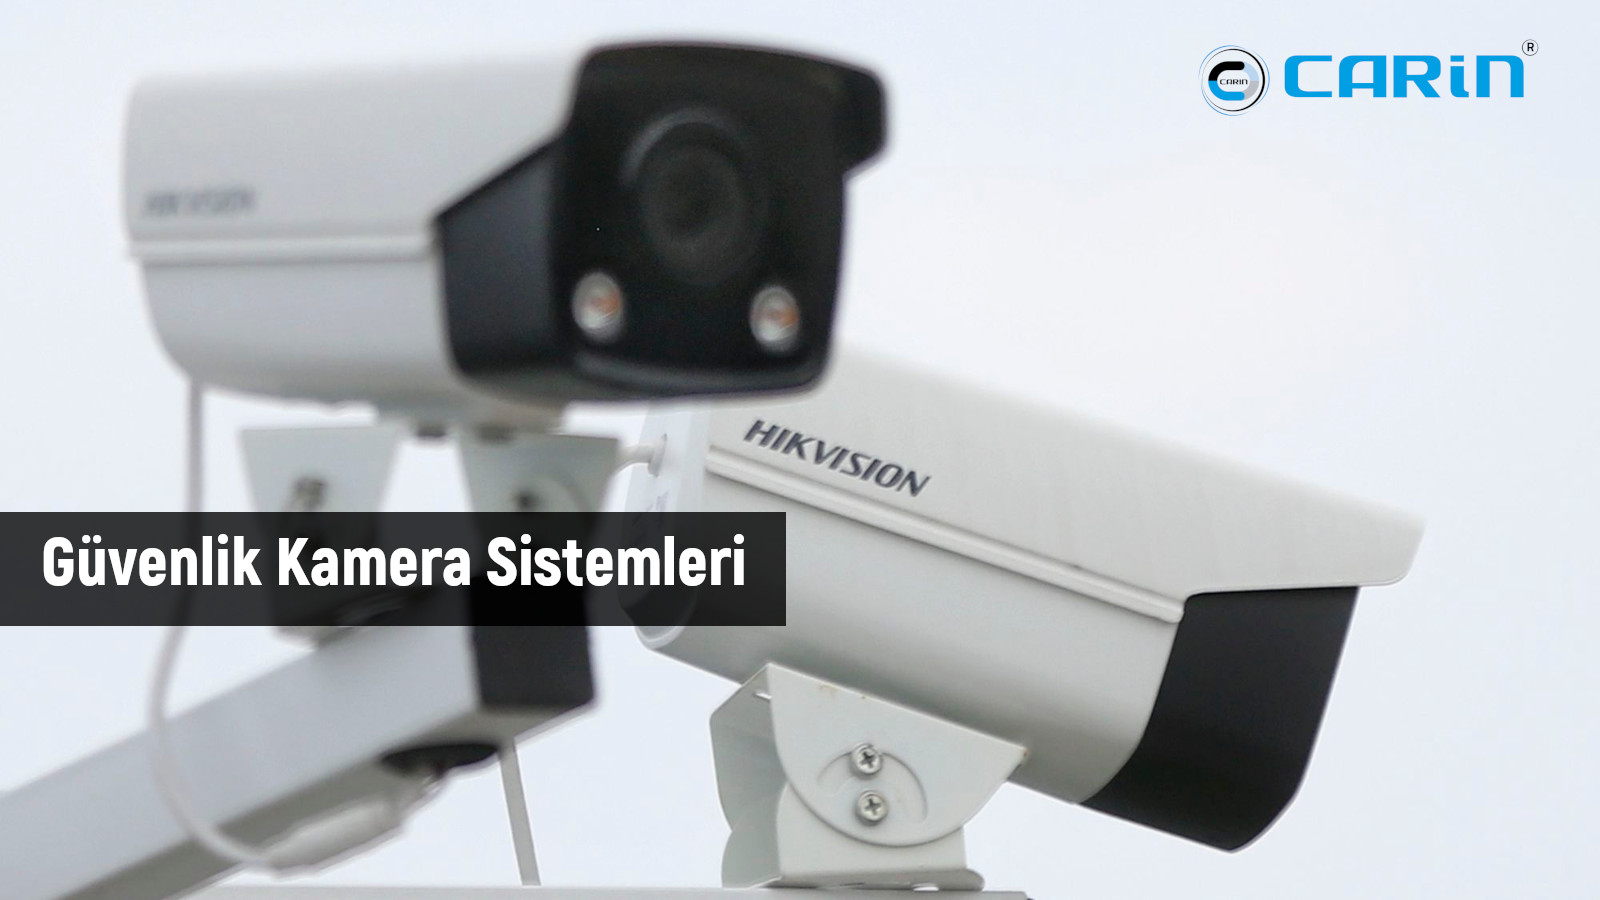 Güvenlik Kamera Sistemi: Evlerinizi, İşyerlerinizi Ve Toplumunuzu Koruyan Teknoloji